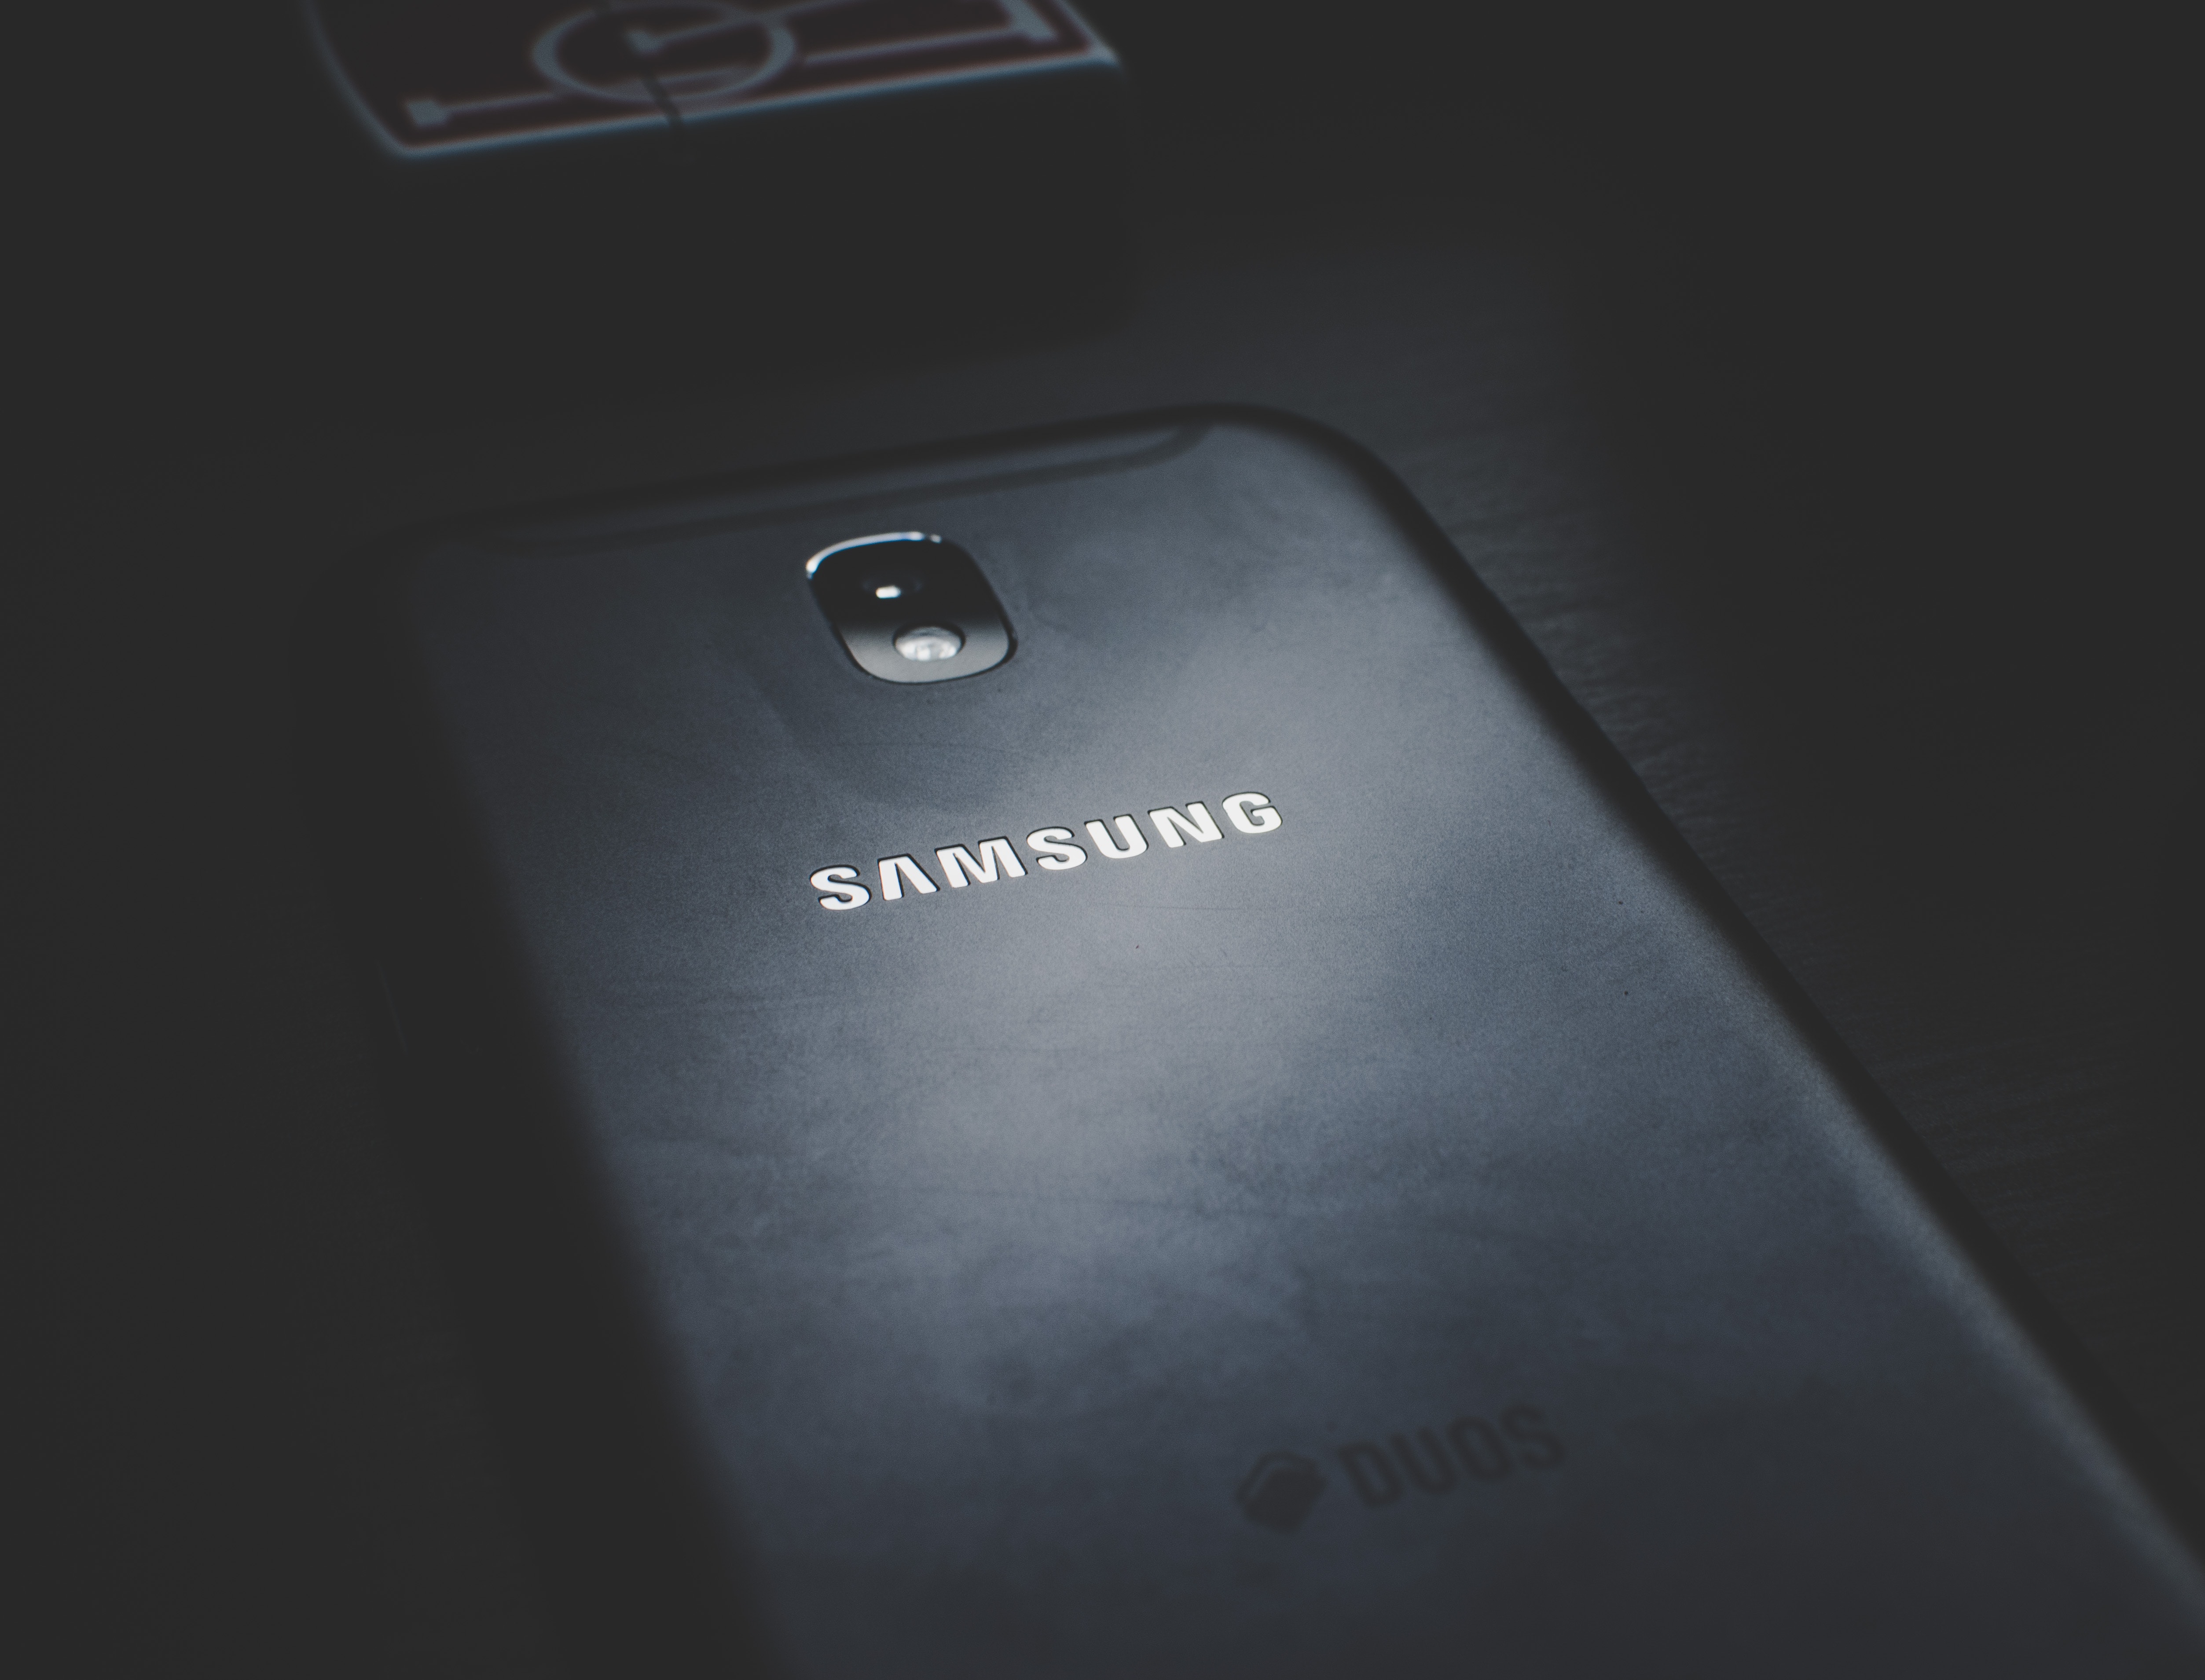 I februar får vi trolig se Samsungs nye Galaxy S-modell, S10. Og en av modellene kan bli ordentlig heftig.